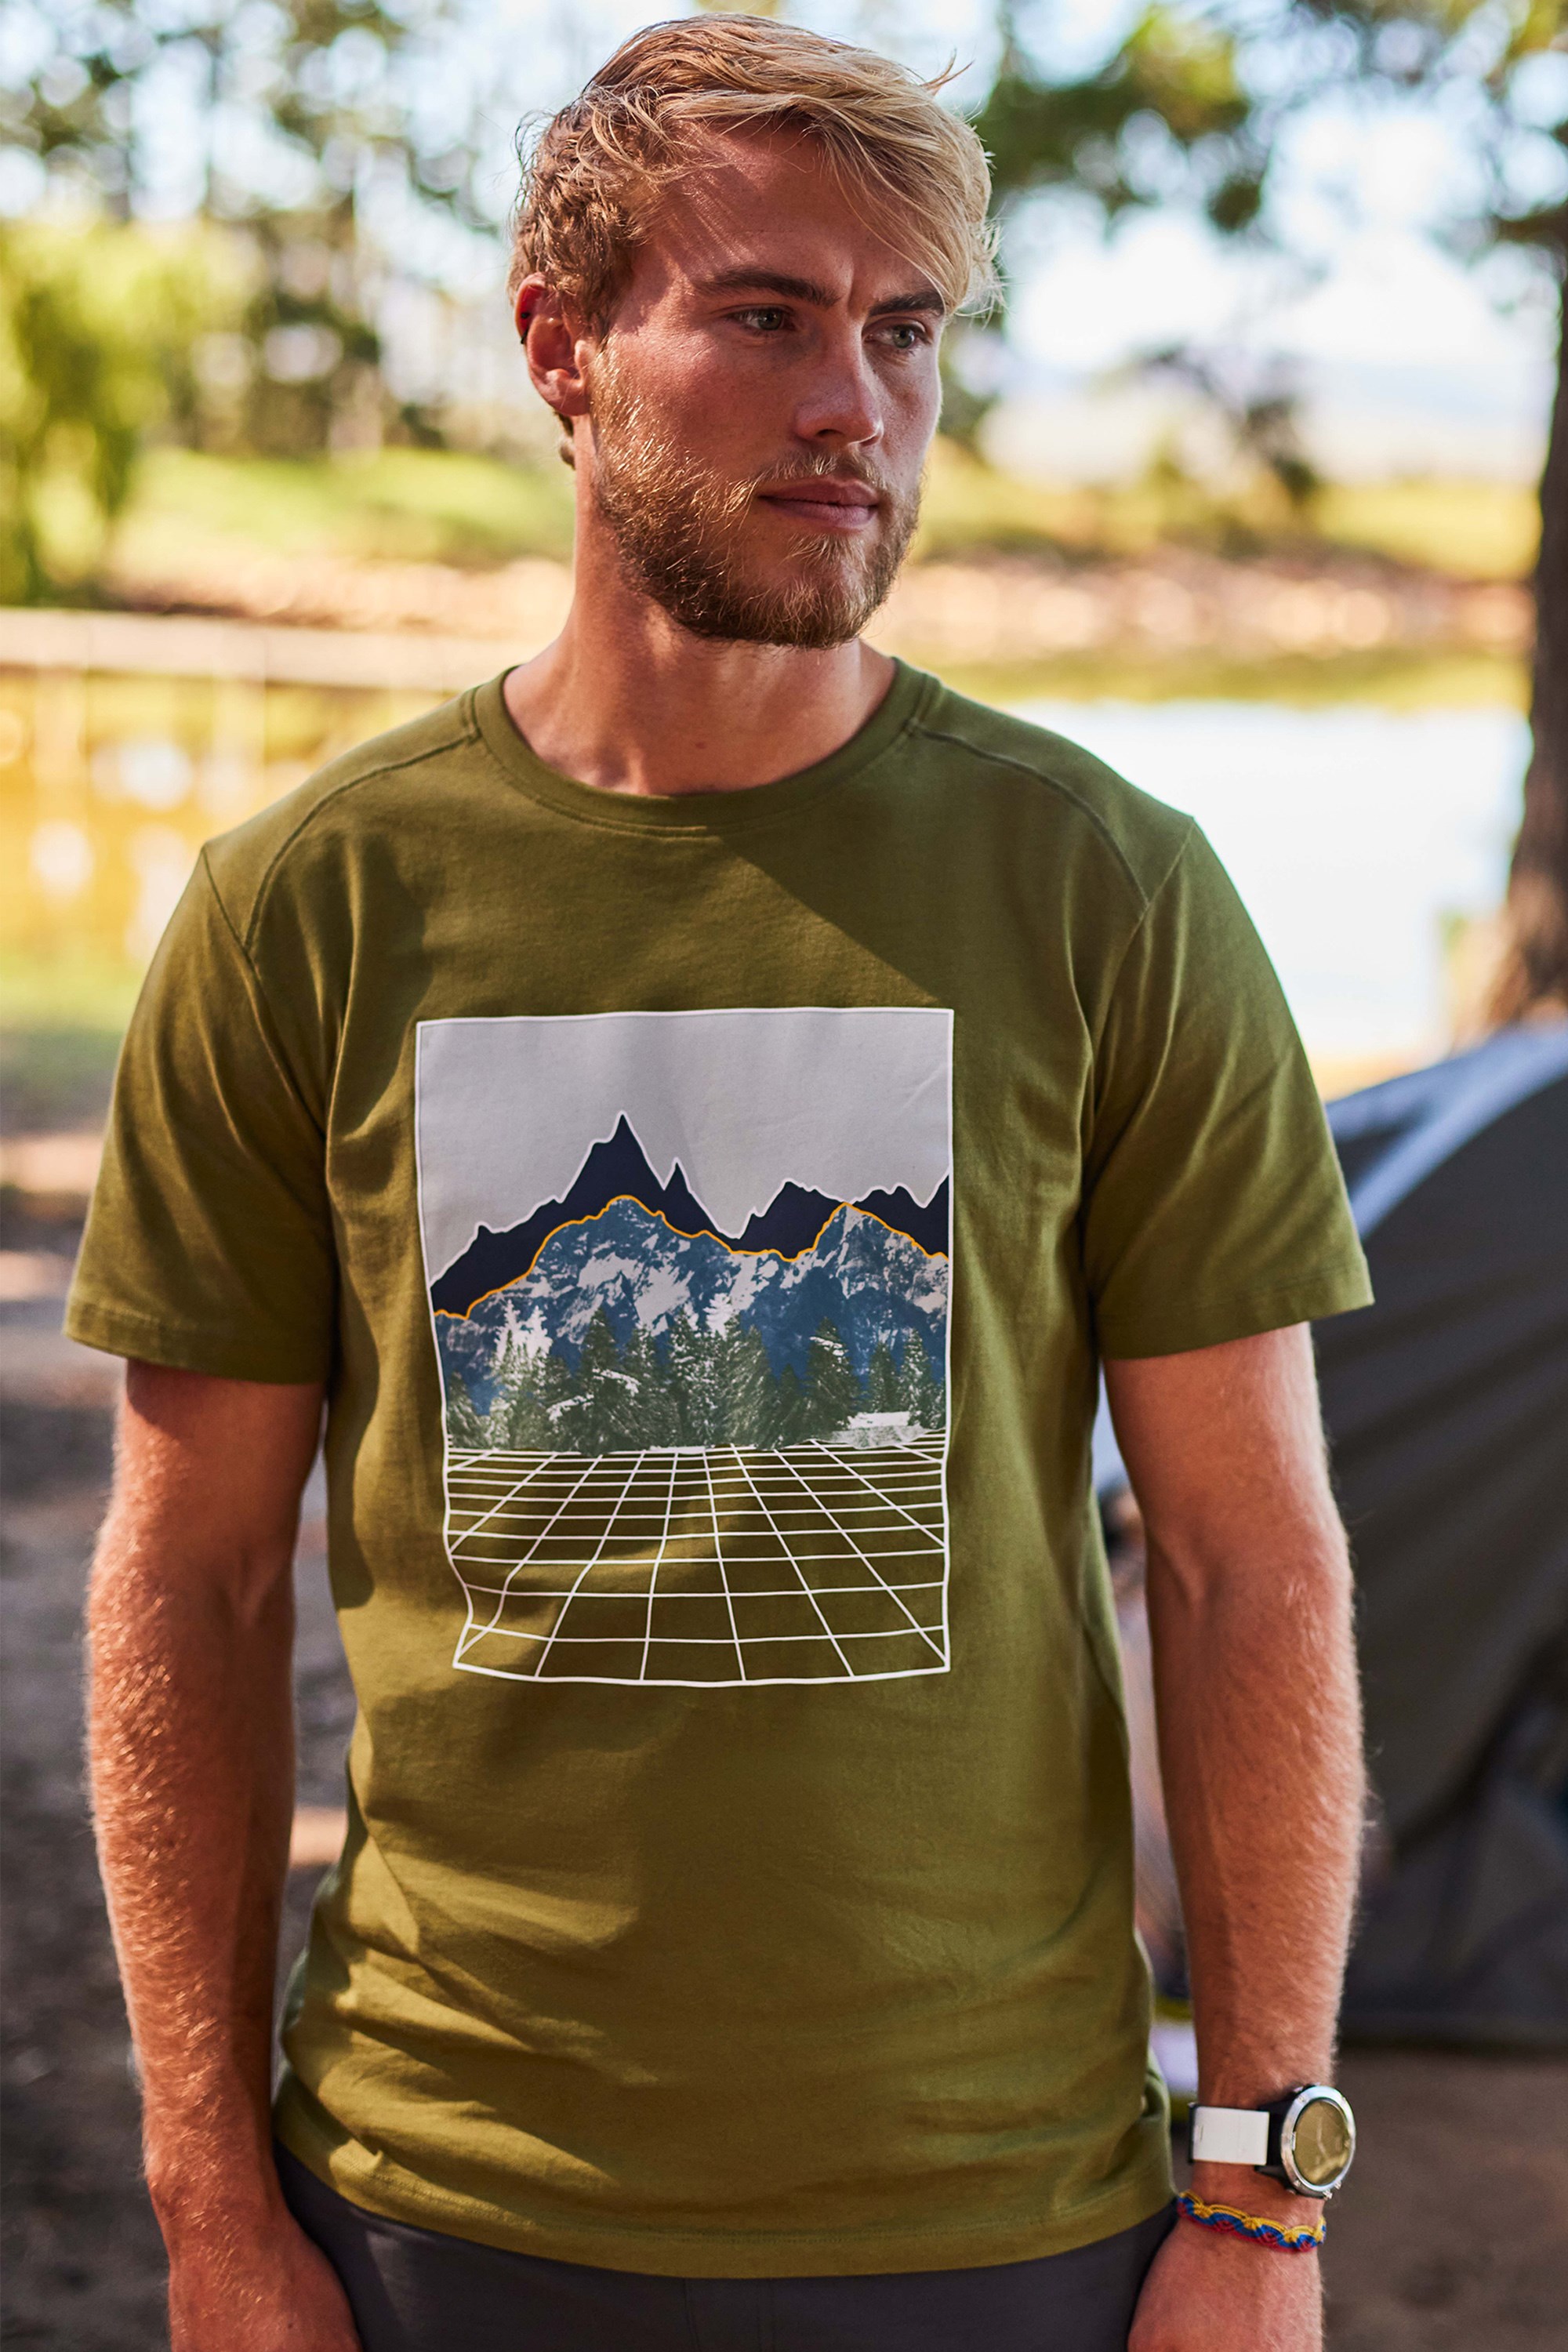 Costuras Planas Camiseta térmica con protección Solar UV UPF50+ Mountain Warehouse Camiseta térmica con protección Solar UV para Hombre Top térmico de Secado rápido